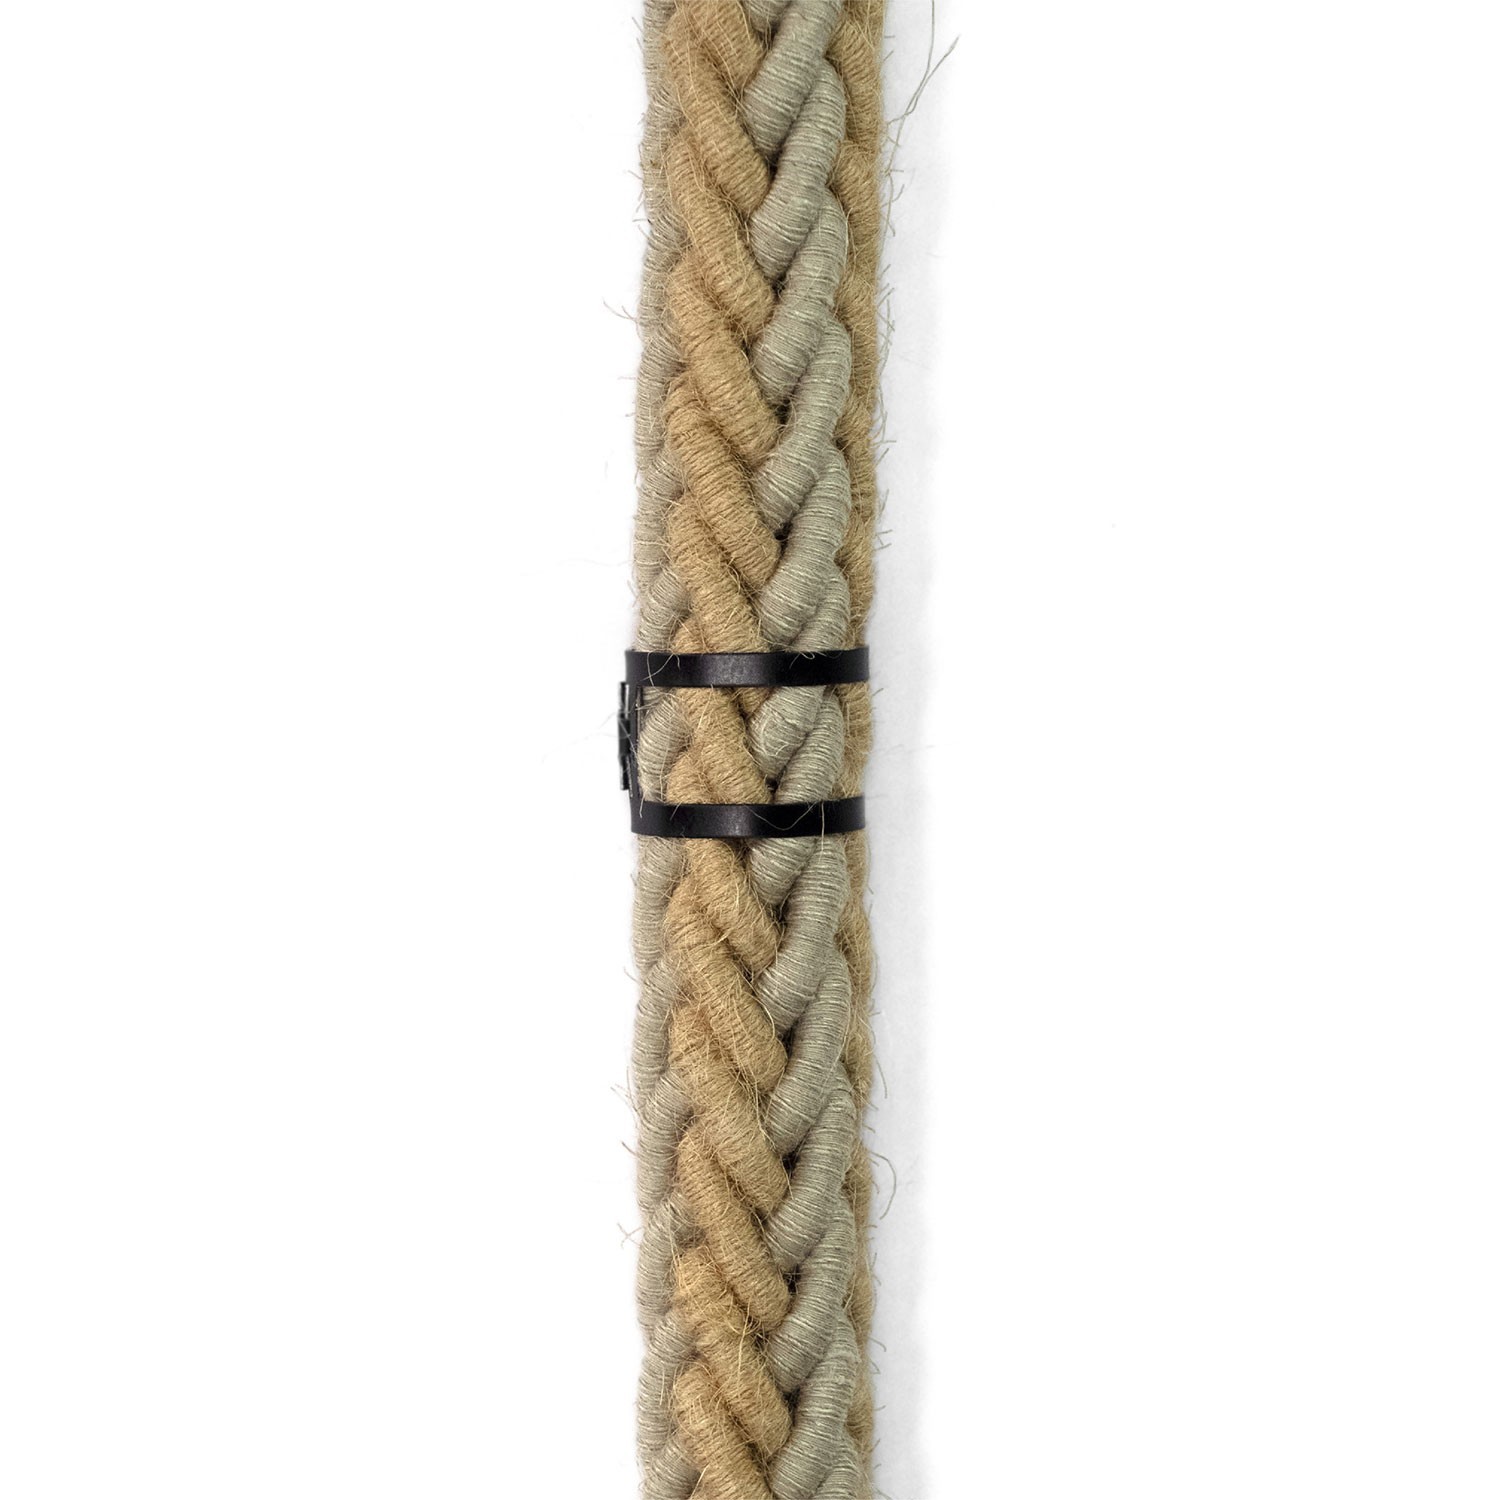 Metalen kabelbinderclip voor touwen met een diameter van 24 mm